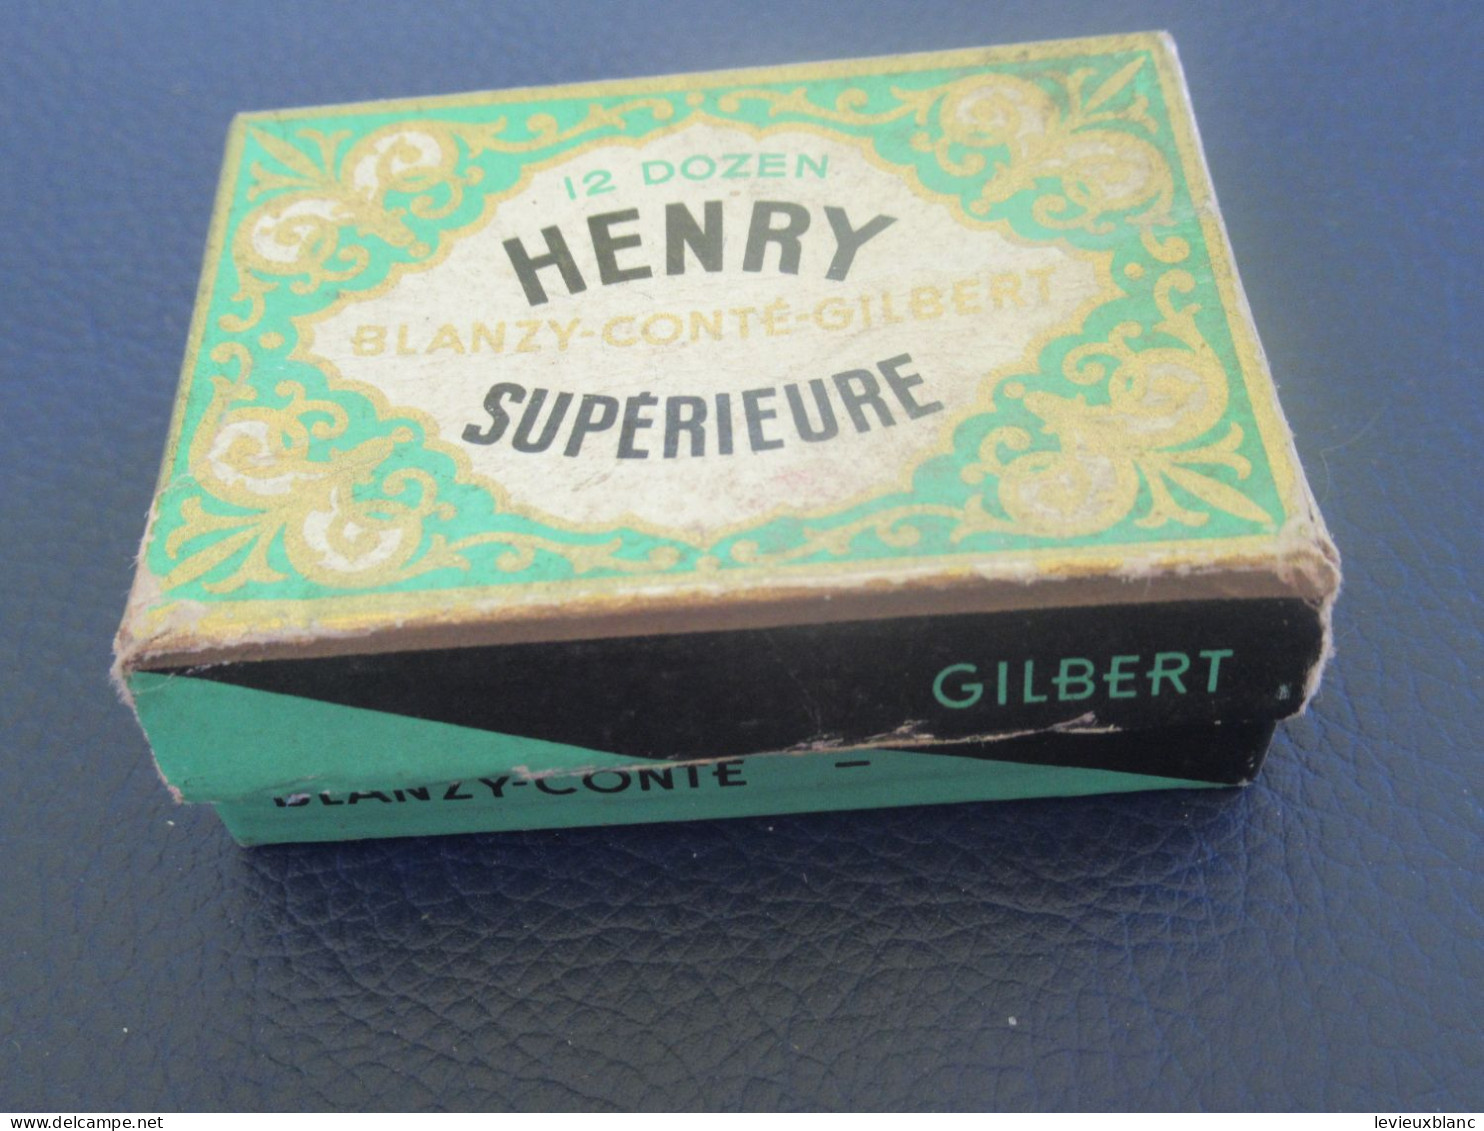 Petite Boite Carton De Plumes/HENRY Supérieure/ Blanzy-Conté-Gilbert/ Vers 1950-1960      CAH365 - Pens